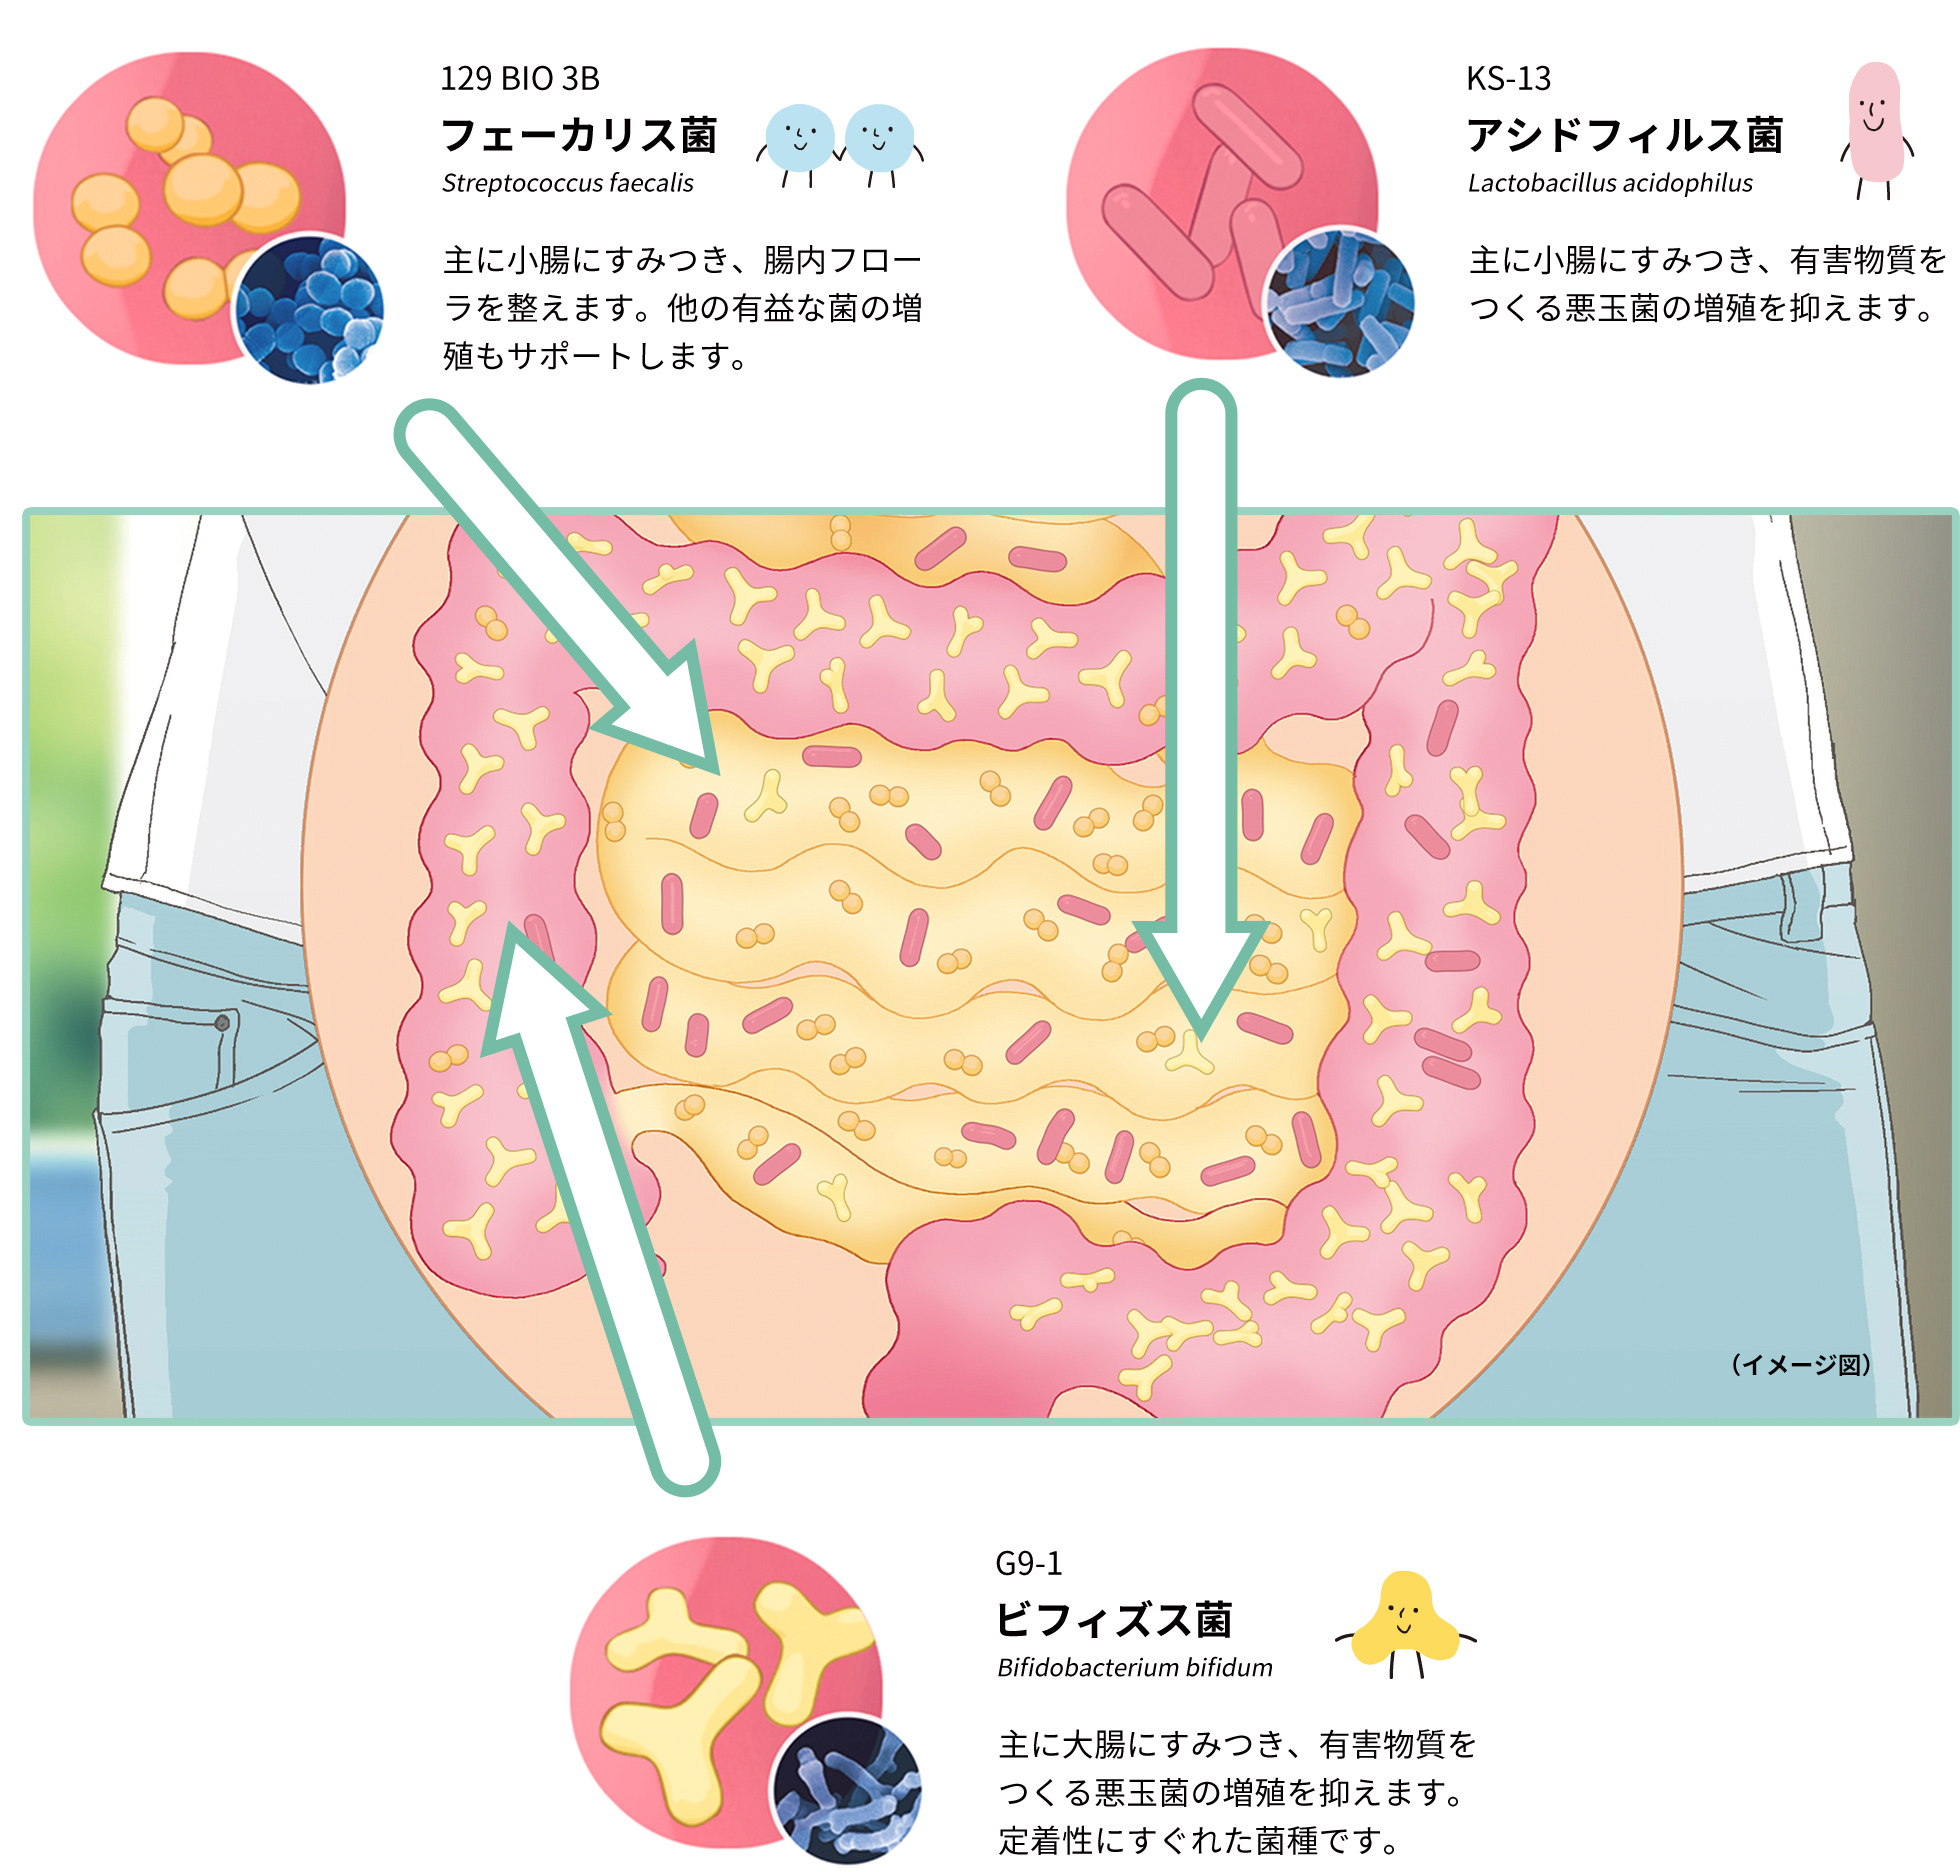 ビフィズス菌と2種類の乳酸菌が腸内環境（腸内フローラ）を整えているイメージイラスト